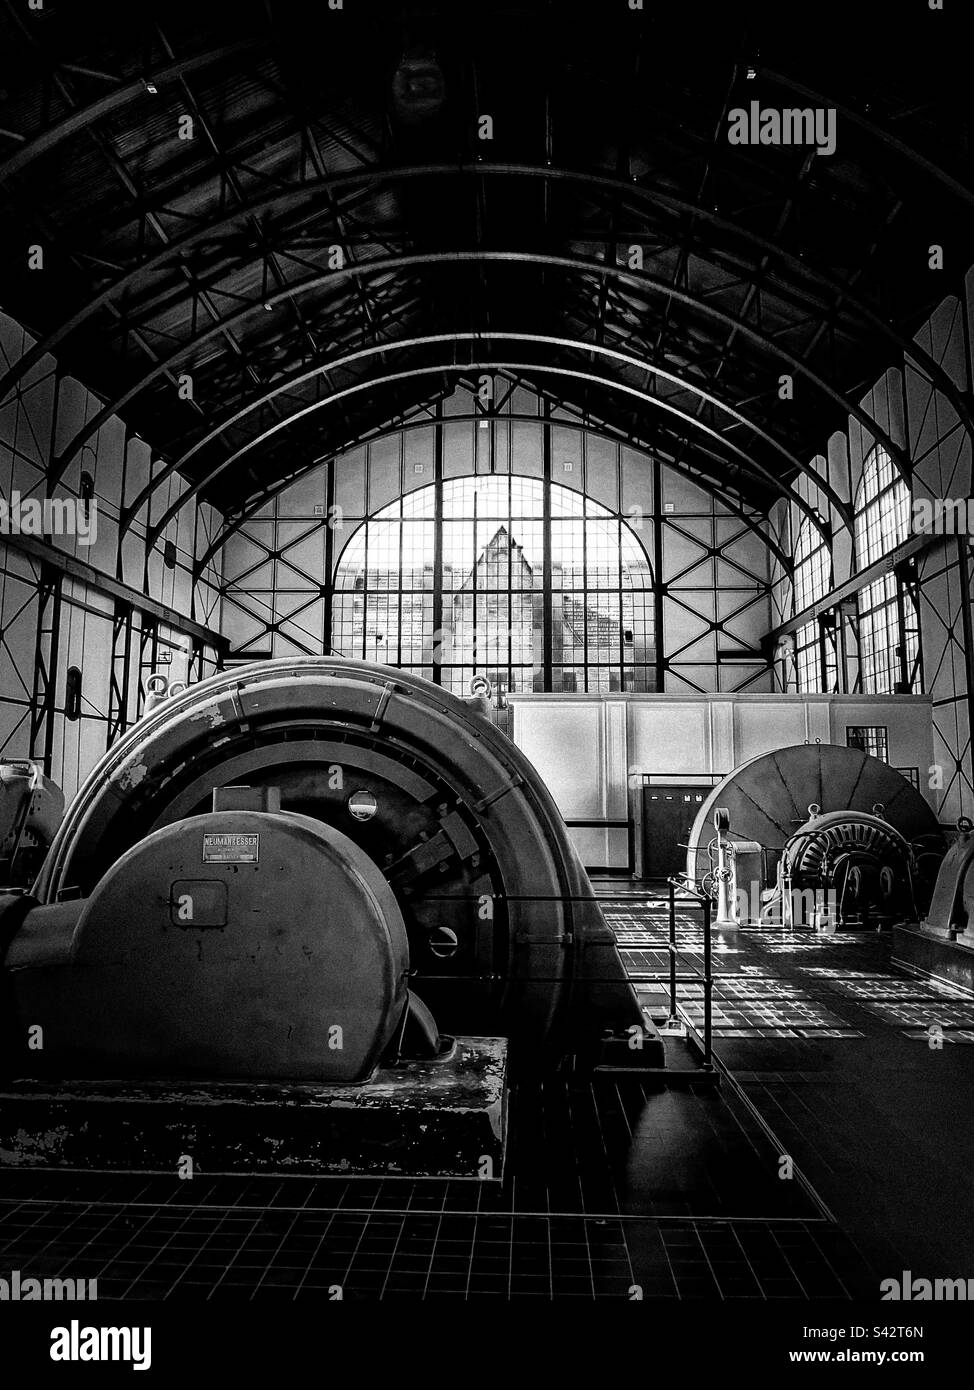 Maschinenhalle Zeche Zollern in schwarz weiß Stock Photo